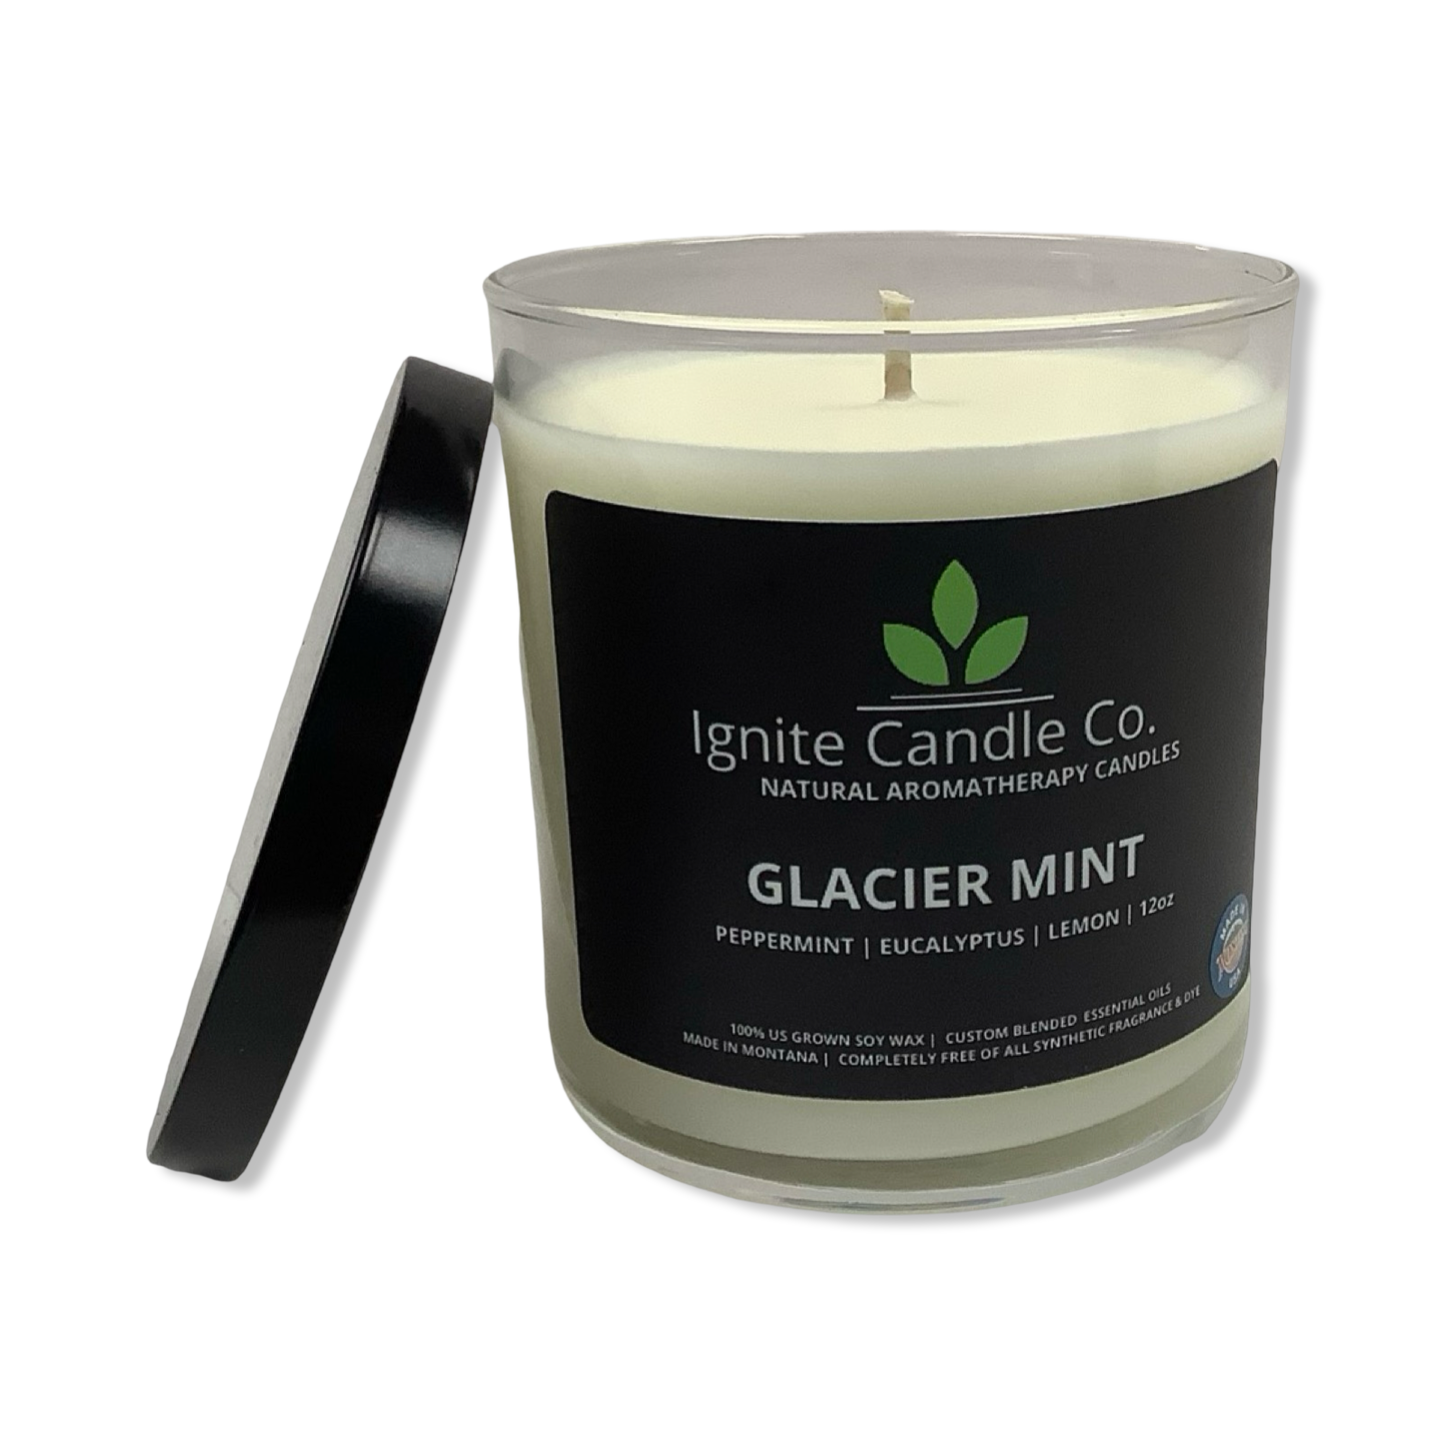 Glacier Mint - Ignite Candle Co.